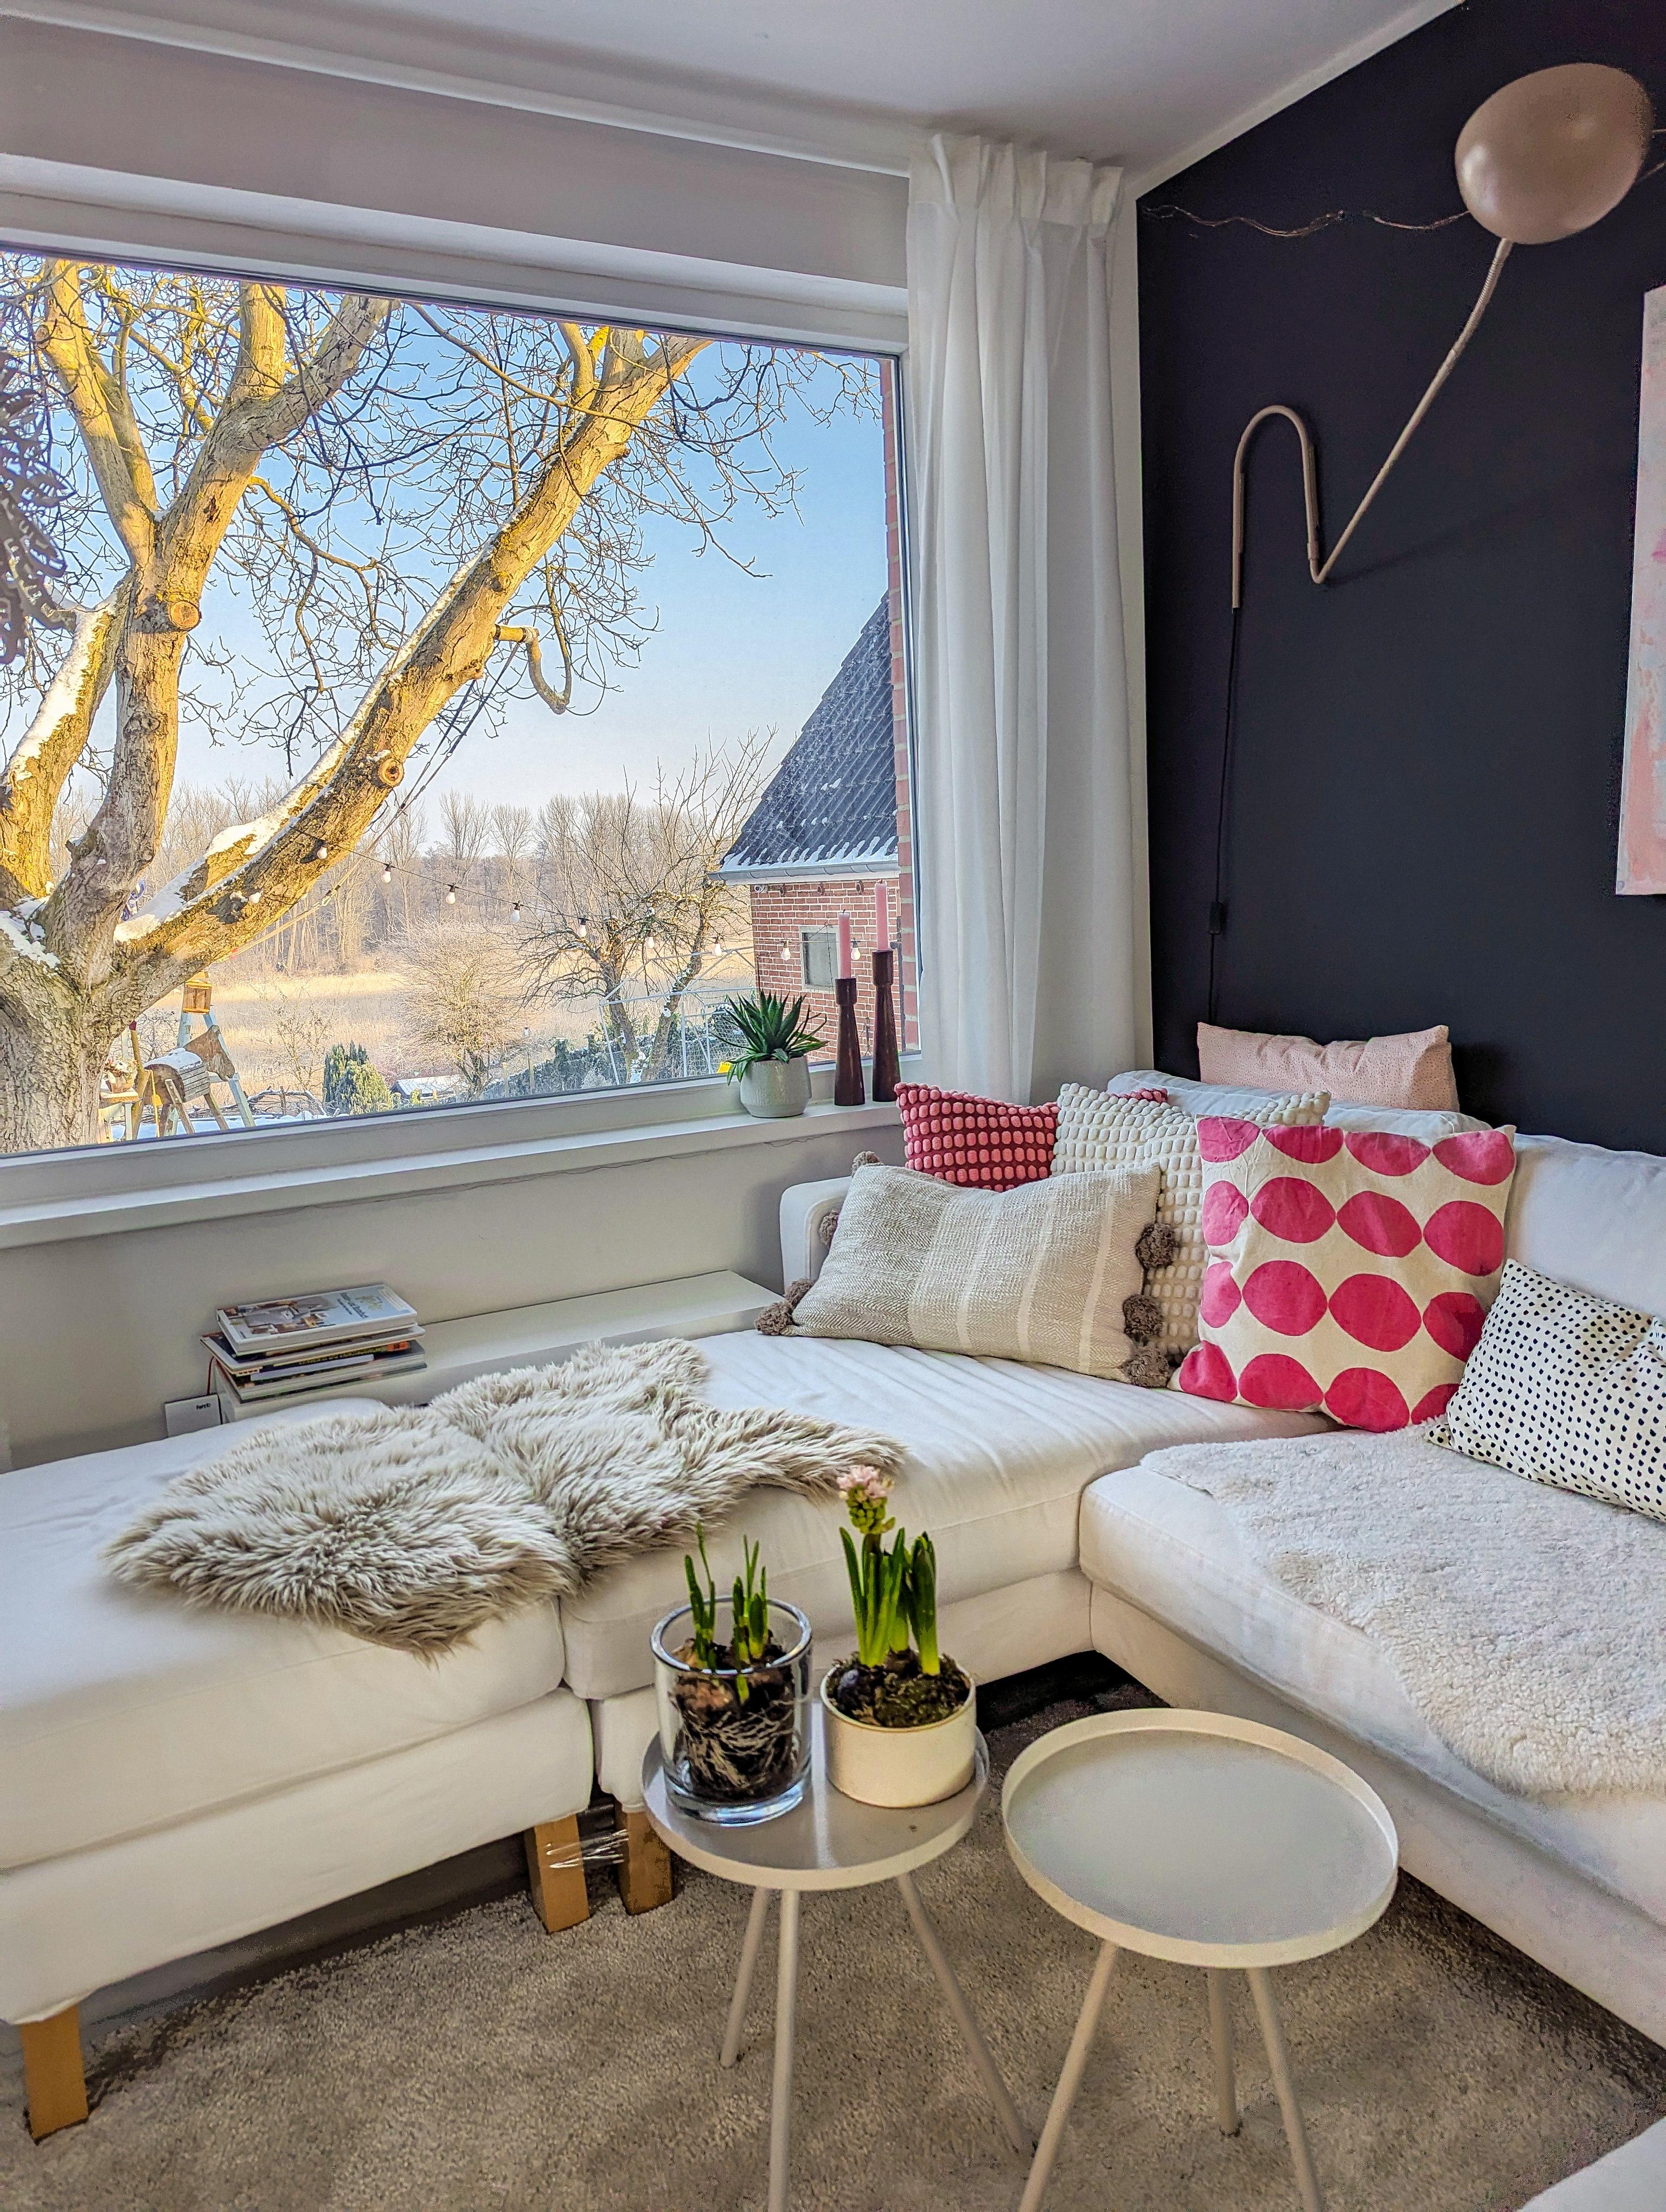 Aussicht auf die Winterwelt


#livingroom #interiordecor #wohnzimmer #sofa #gemütlich
#fenster
#winter 